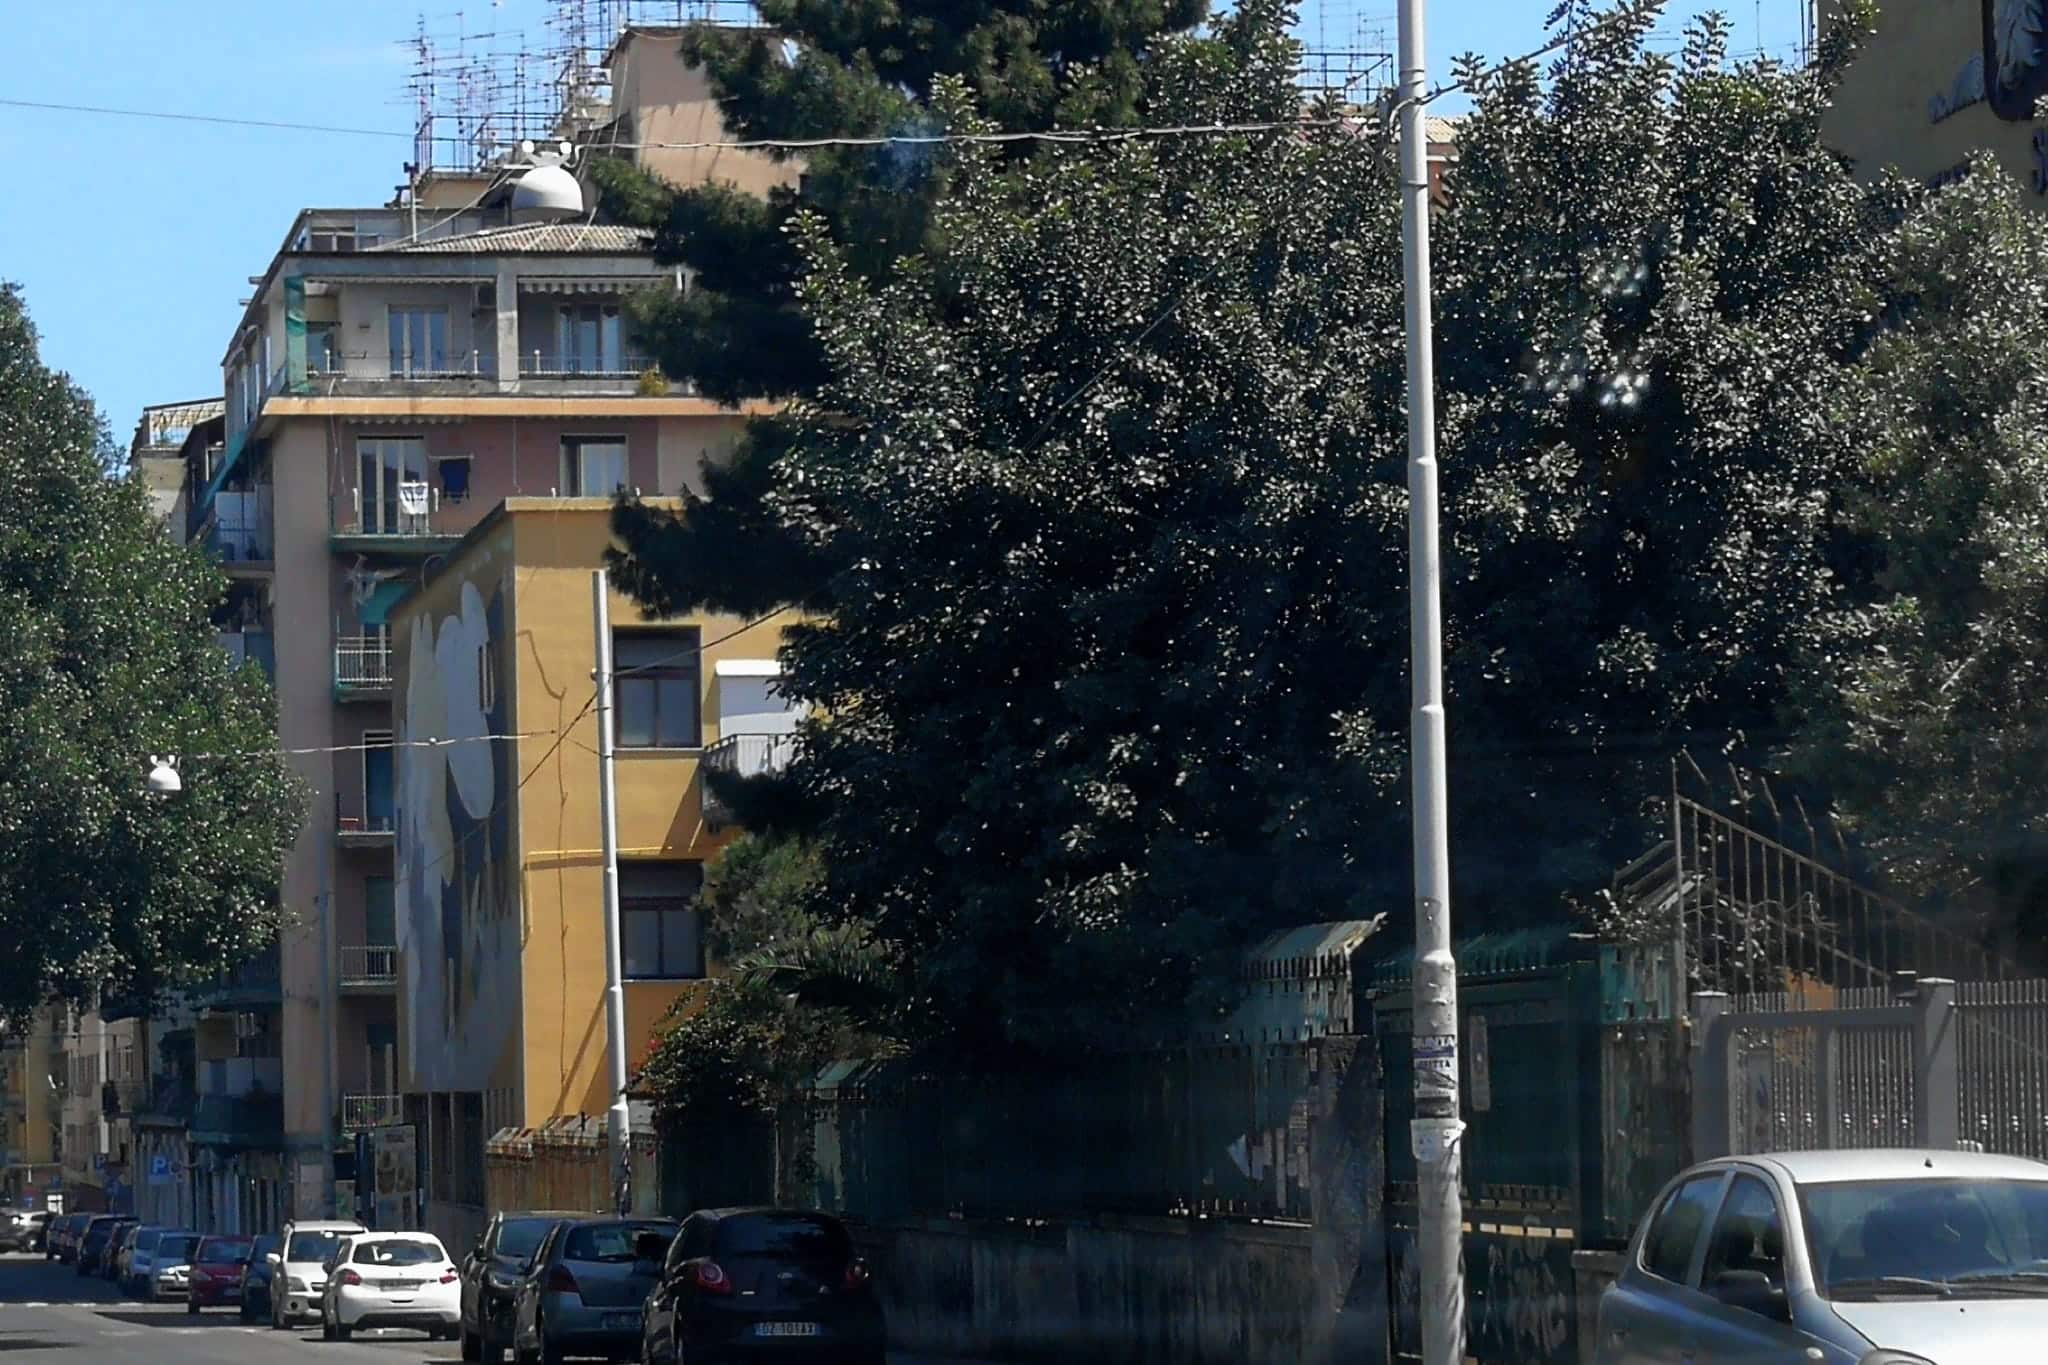 Potatura alberi via Sassari, Ferrara (III municipio di Catania): “Obiettivo cura del verde”